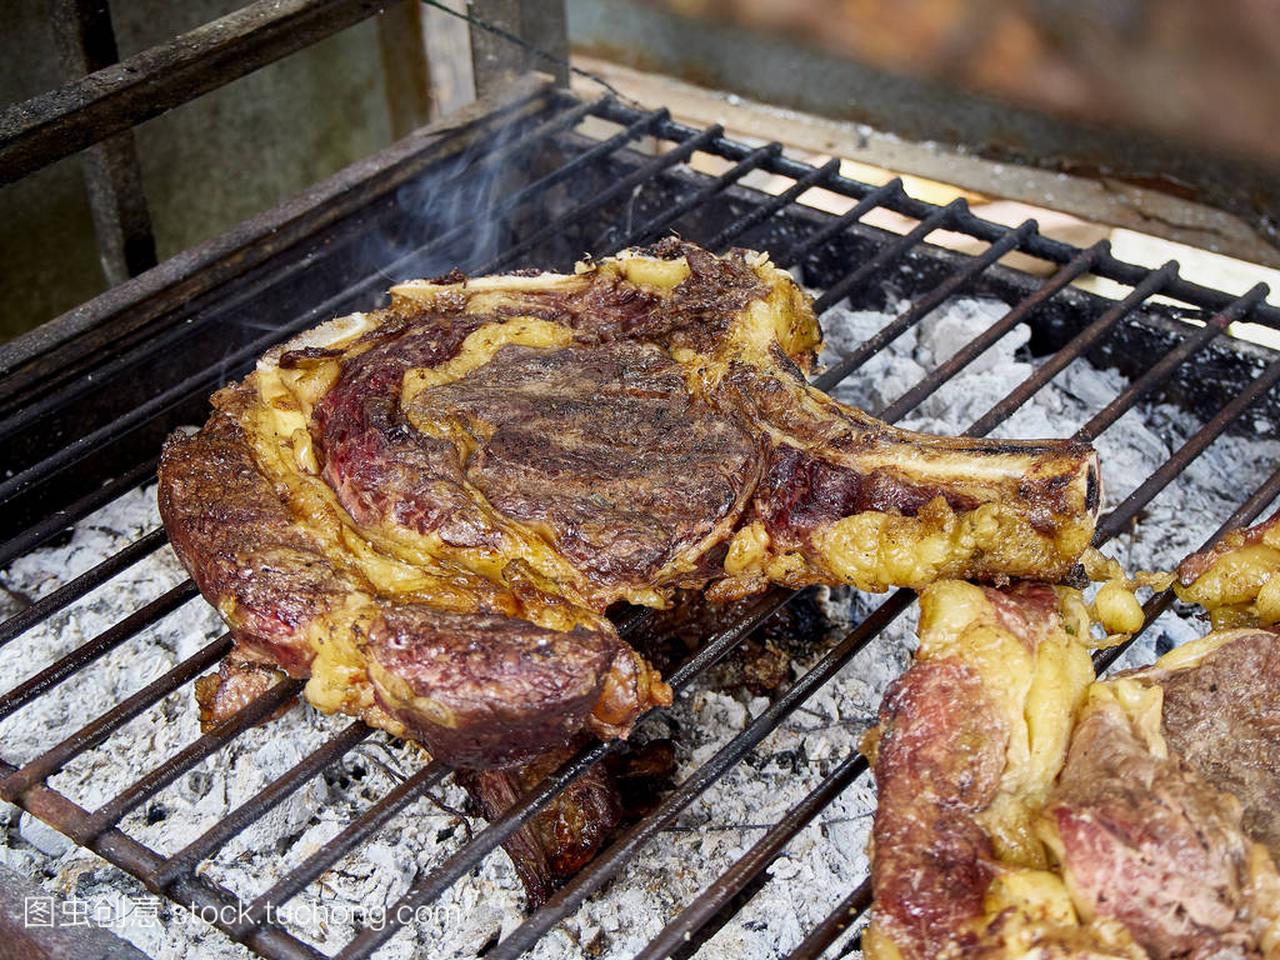 西班牙牛肉 Chuleton, 也称为骨在肋眼牛排, 牛